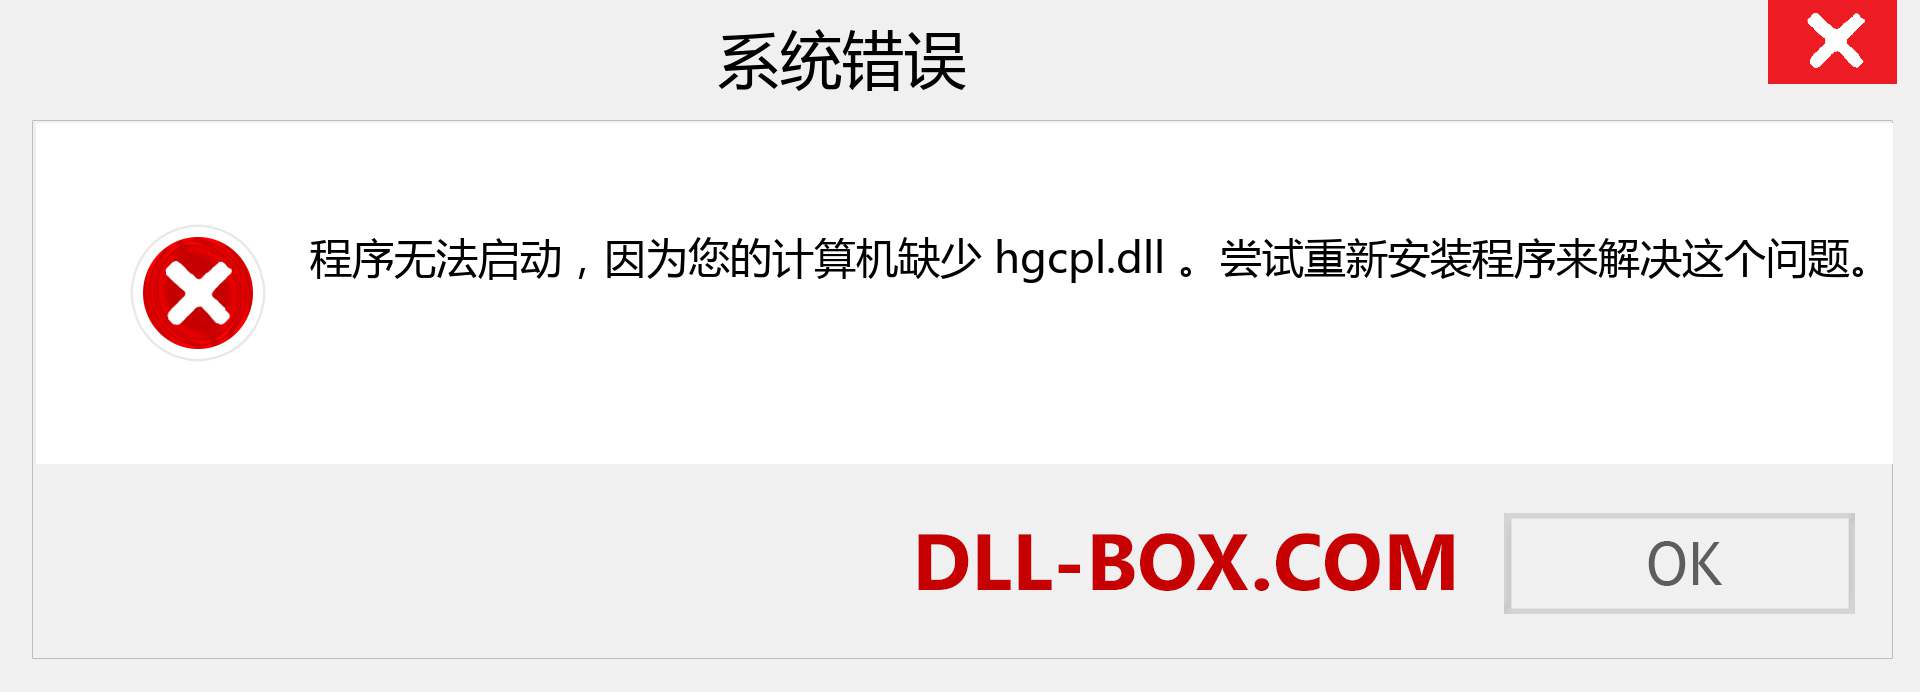 hgcpl.dll 文件丢失？。 适用于 Windows 7、8、10 的下载 - 修复 Windows、照片、图像上的 hgcpl dll 丢失错误